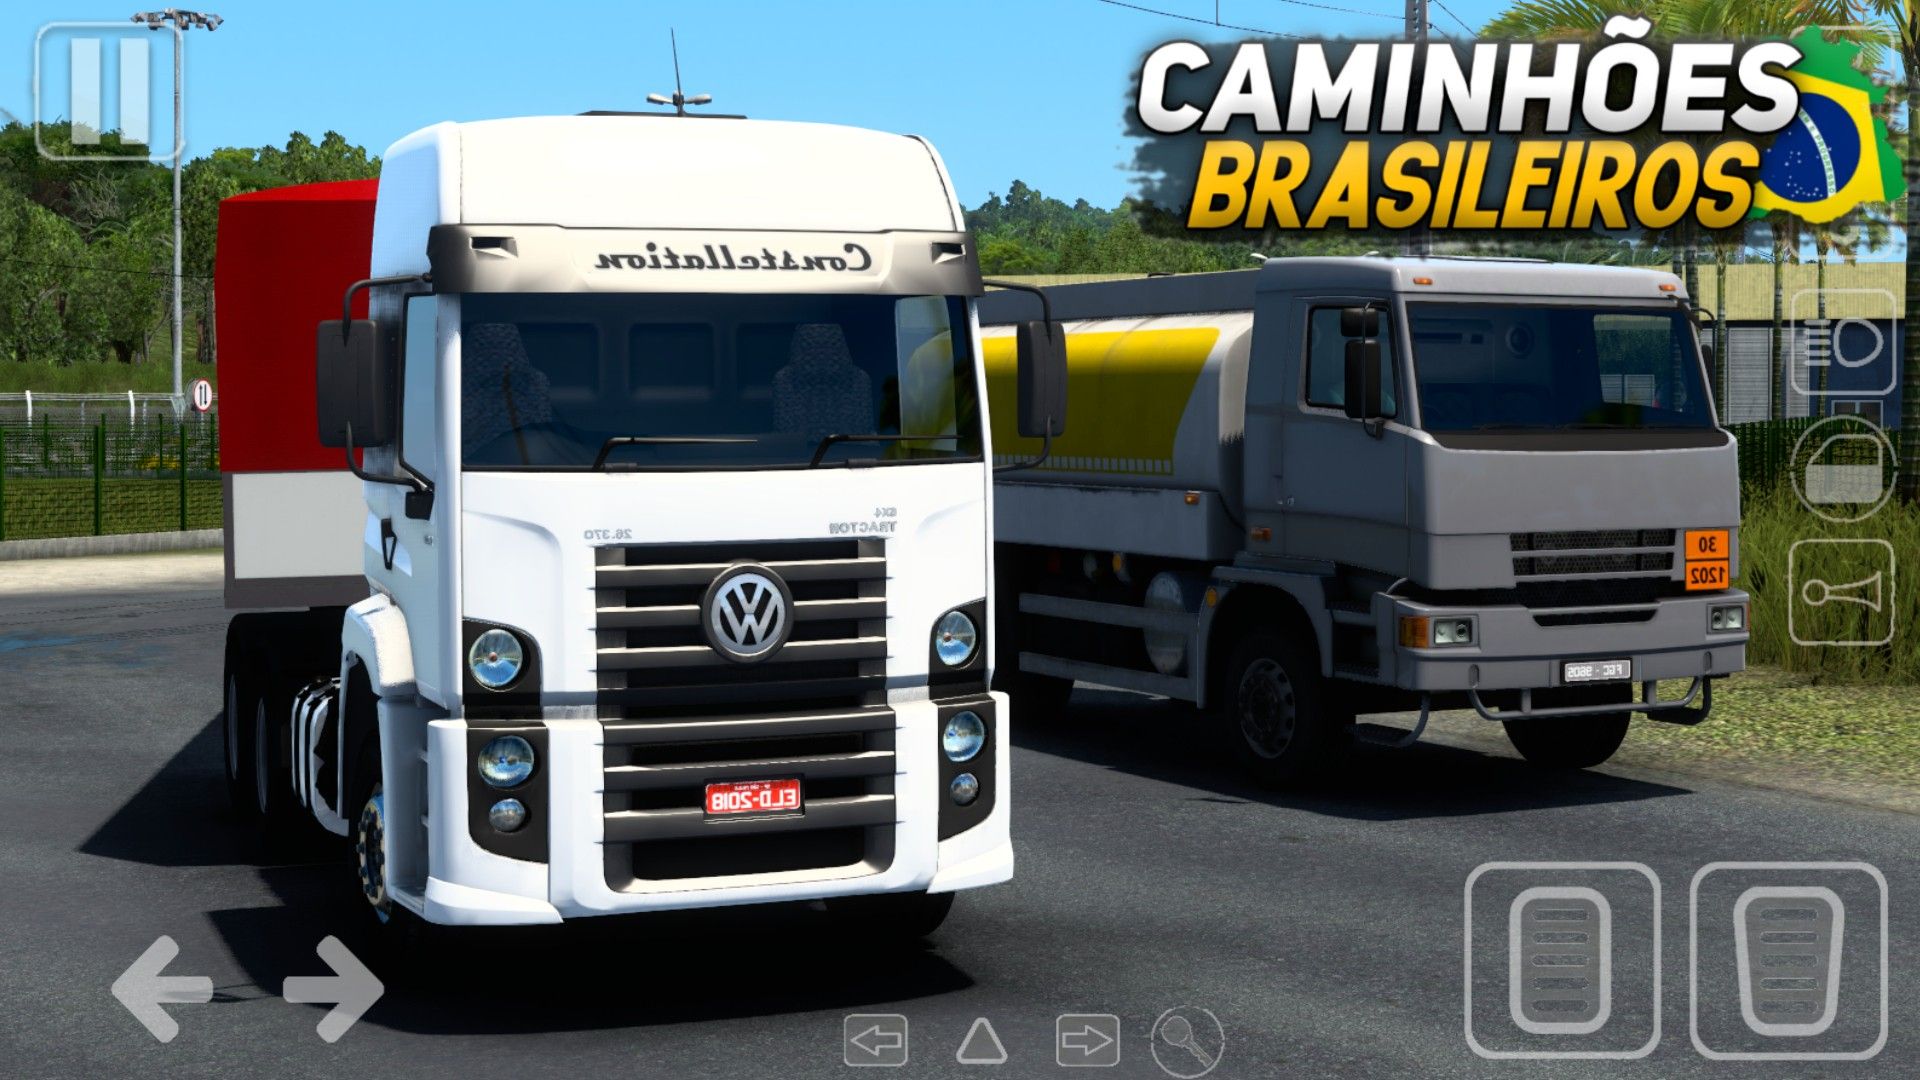 NOVO JOGO DE CAMINHÕES BRASILEIROS PARA PC - Longo Percurso Simulator 